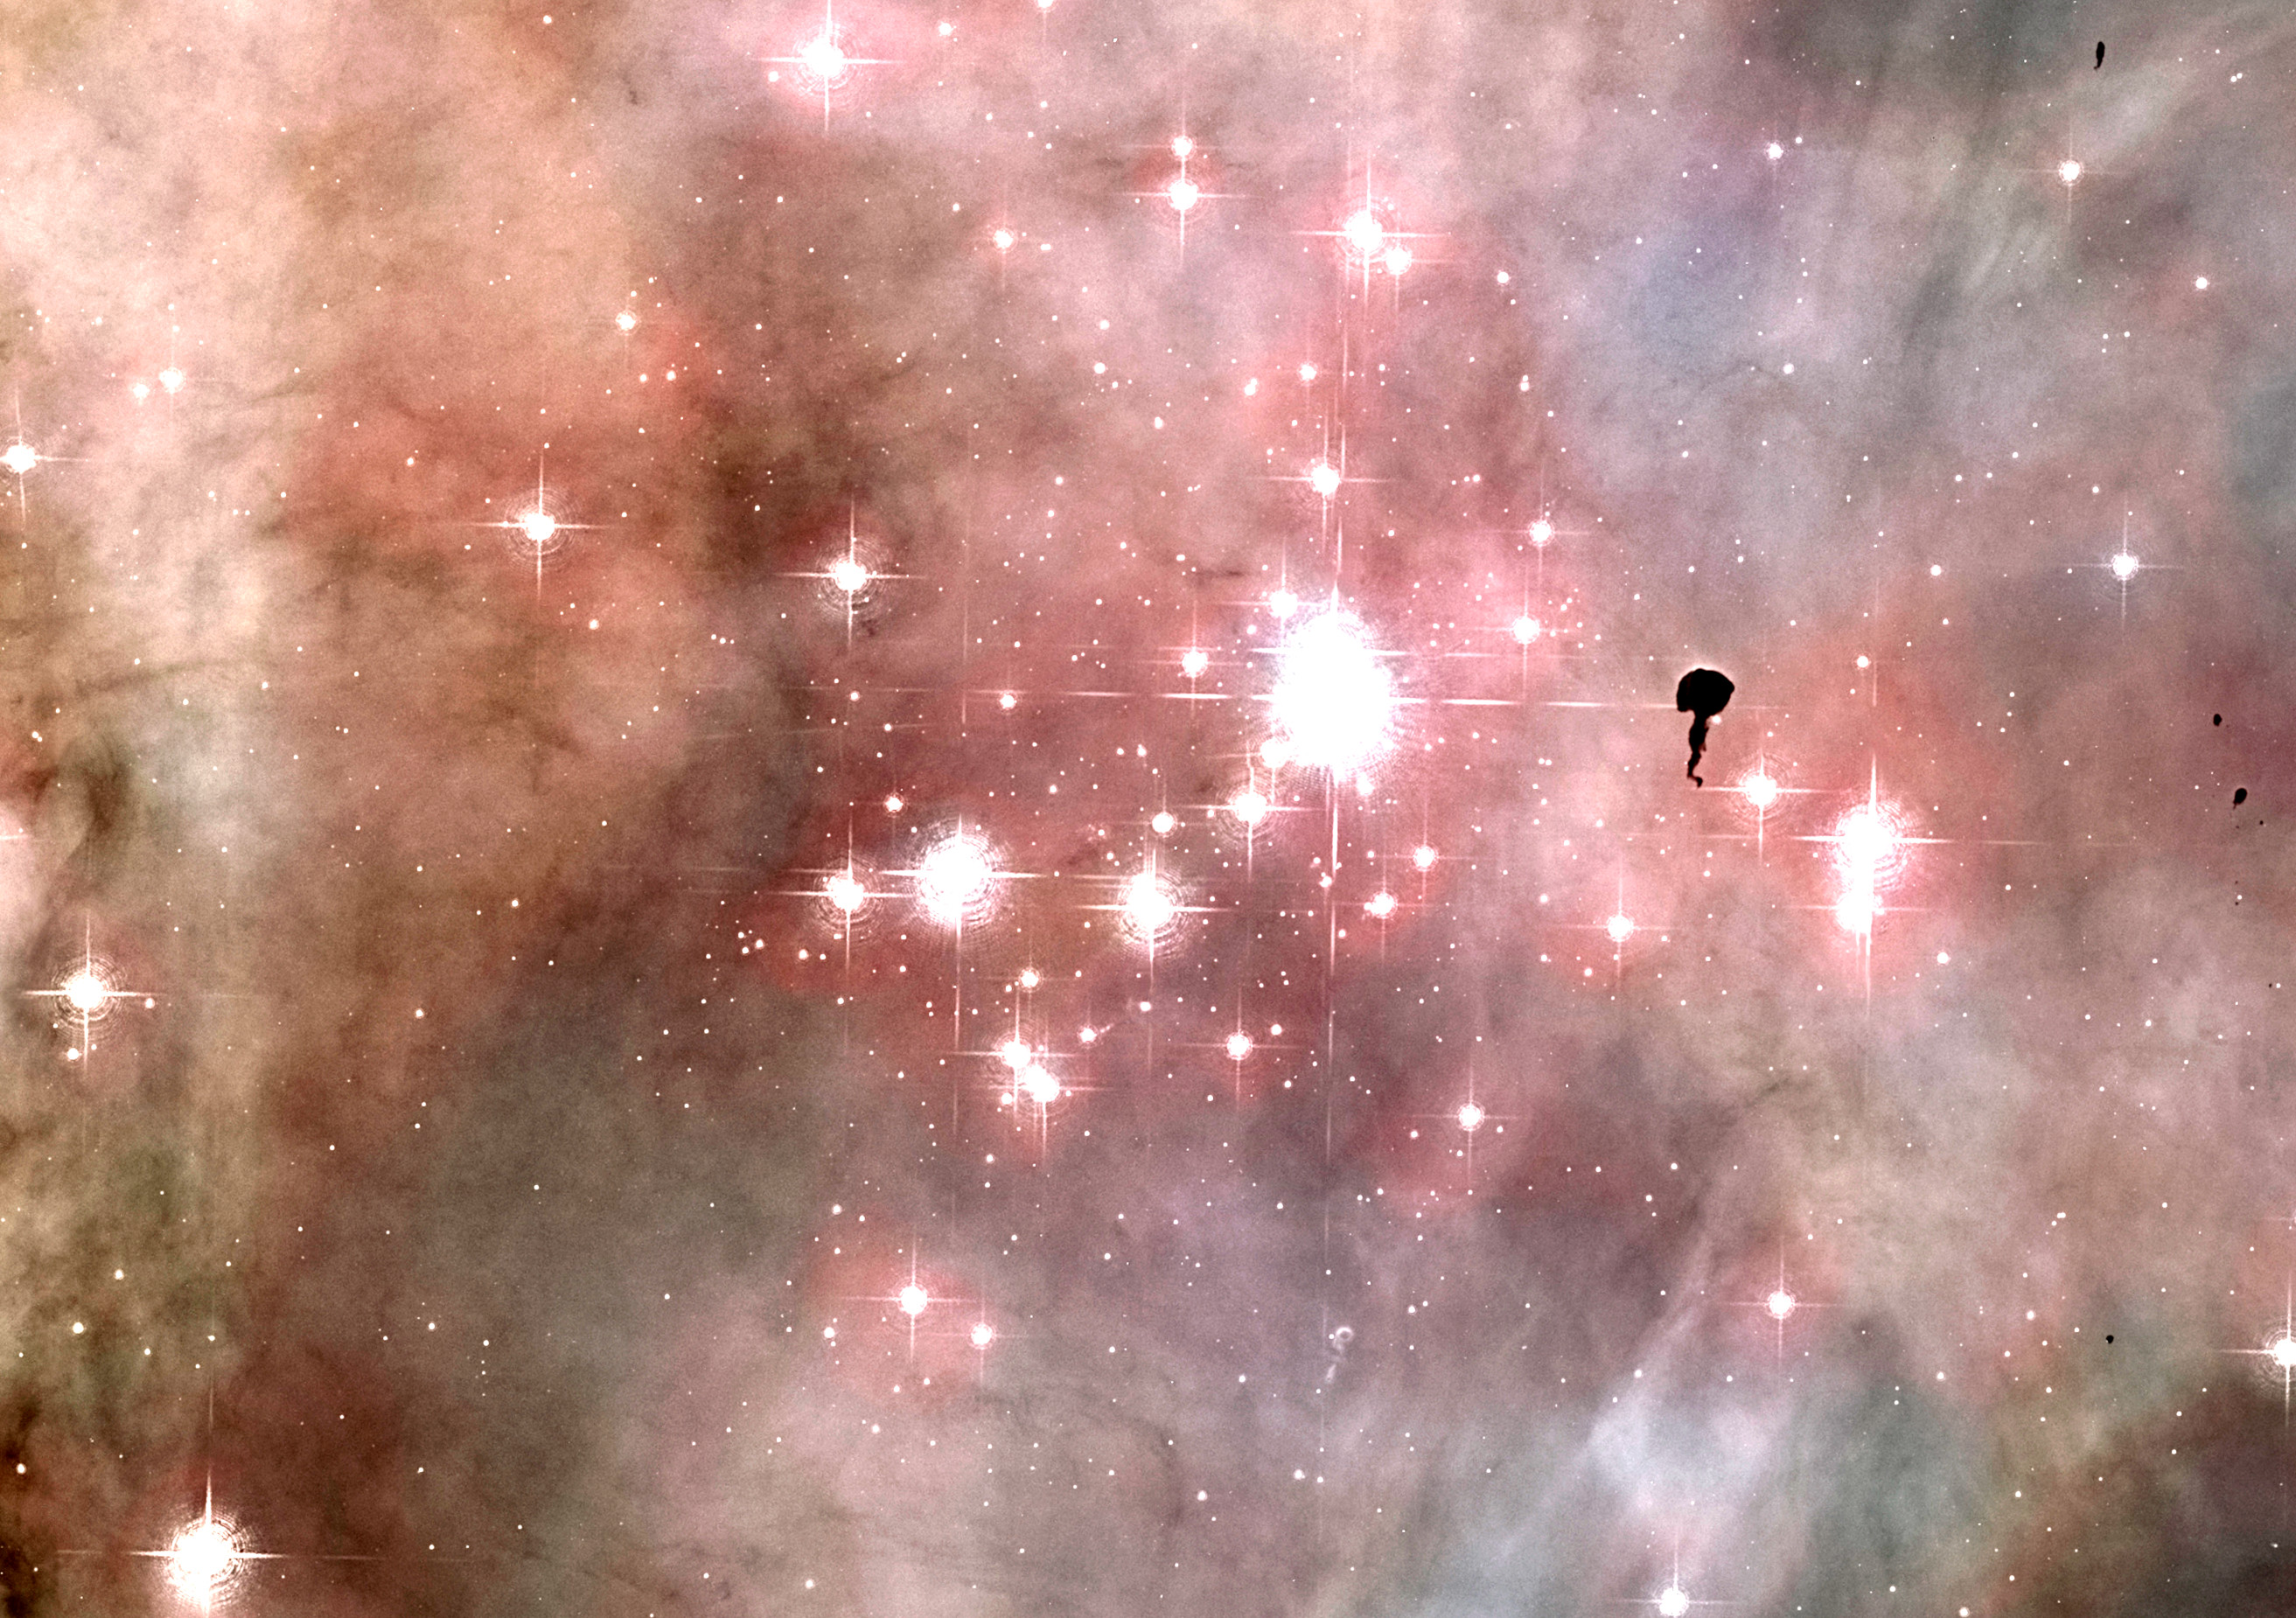 Trumpler 14, ein heller Sternhaufen vor dem orangebraun dargestellten Carinanebel.